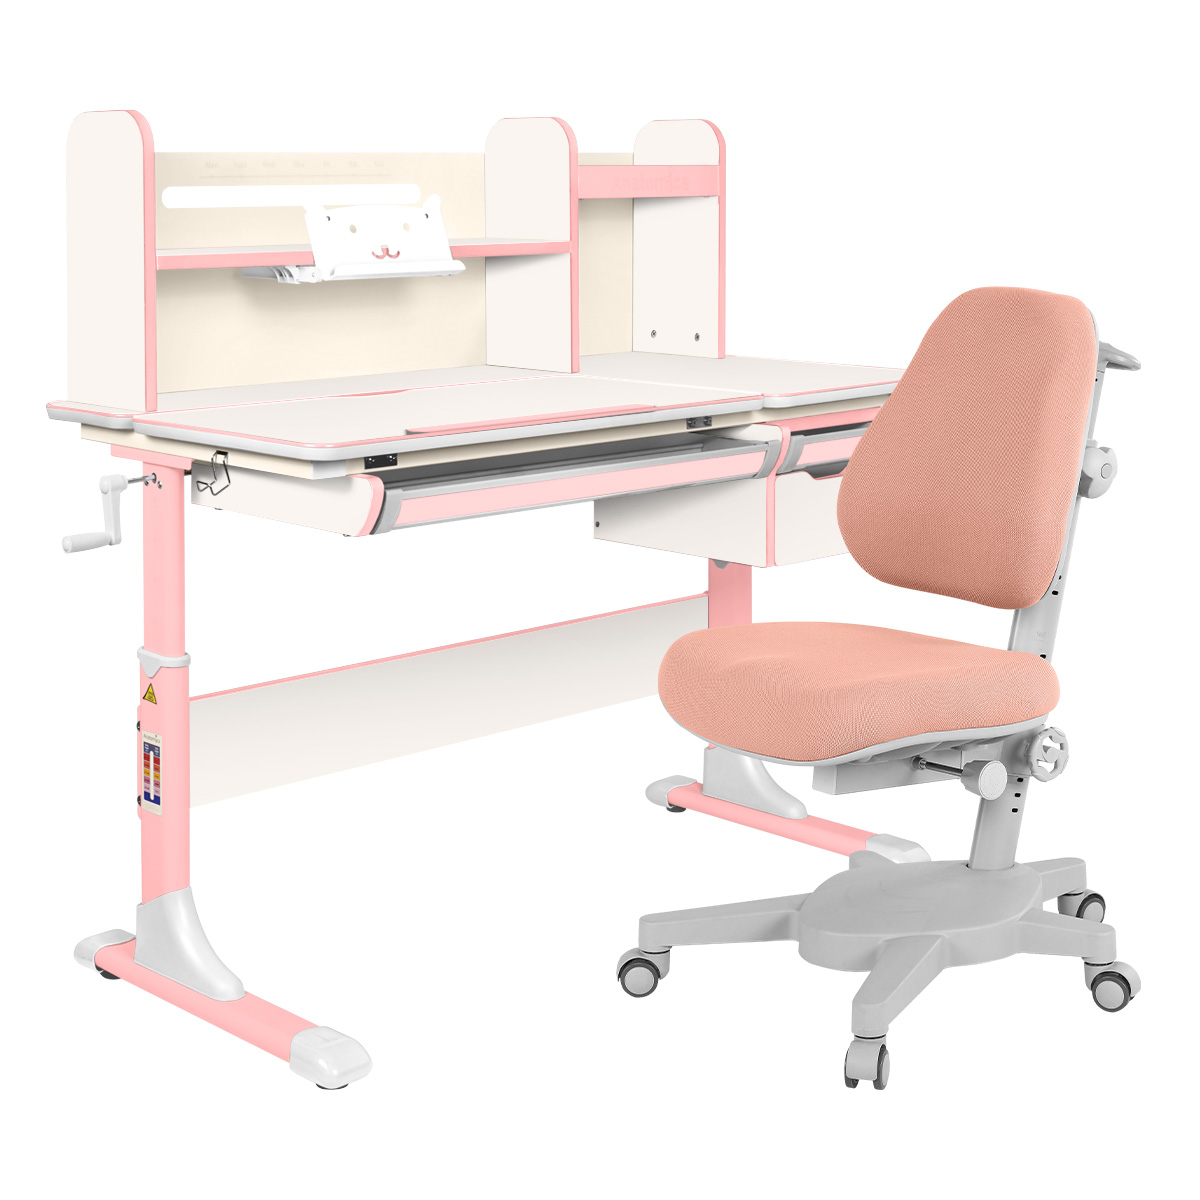 Комплект Anatomica парта Genius белый/розовый со светло-розовым креслом Armata комплект anatomica парта genius клен розовый с розовым креслом figra